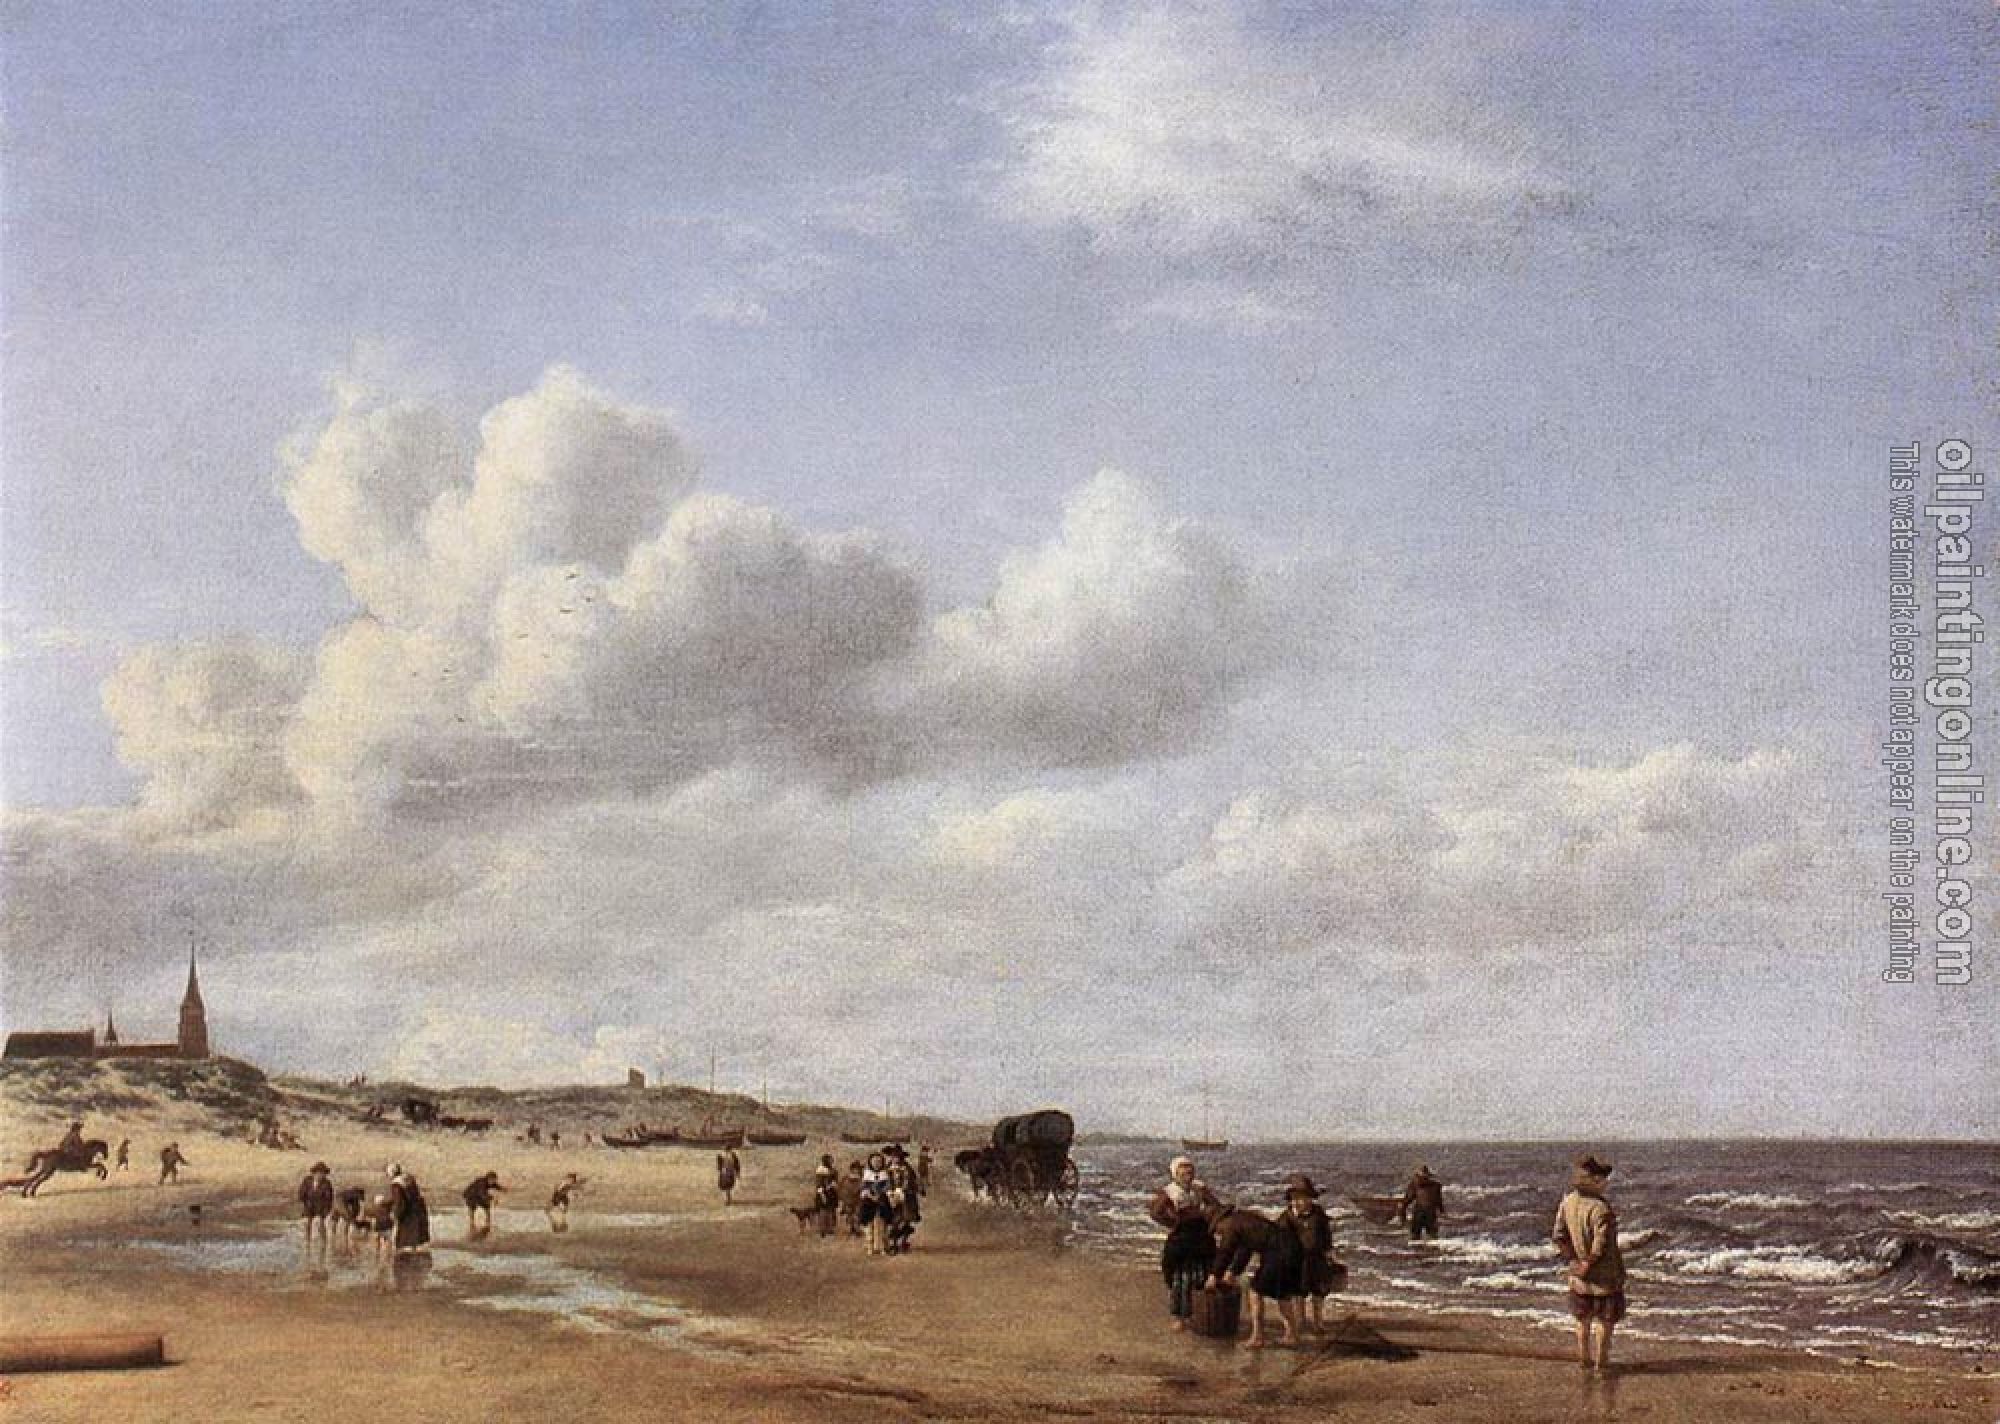 Velde, Adriaen van de - The Beach At Scheveningen